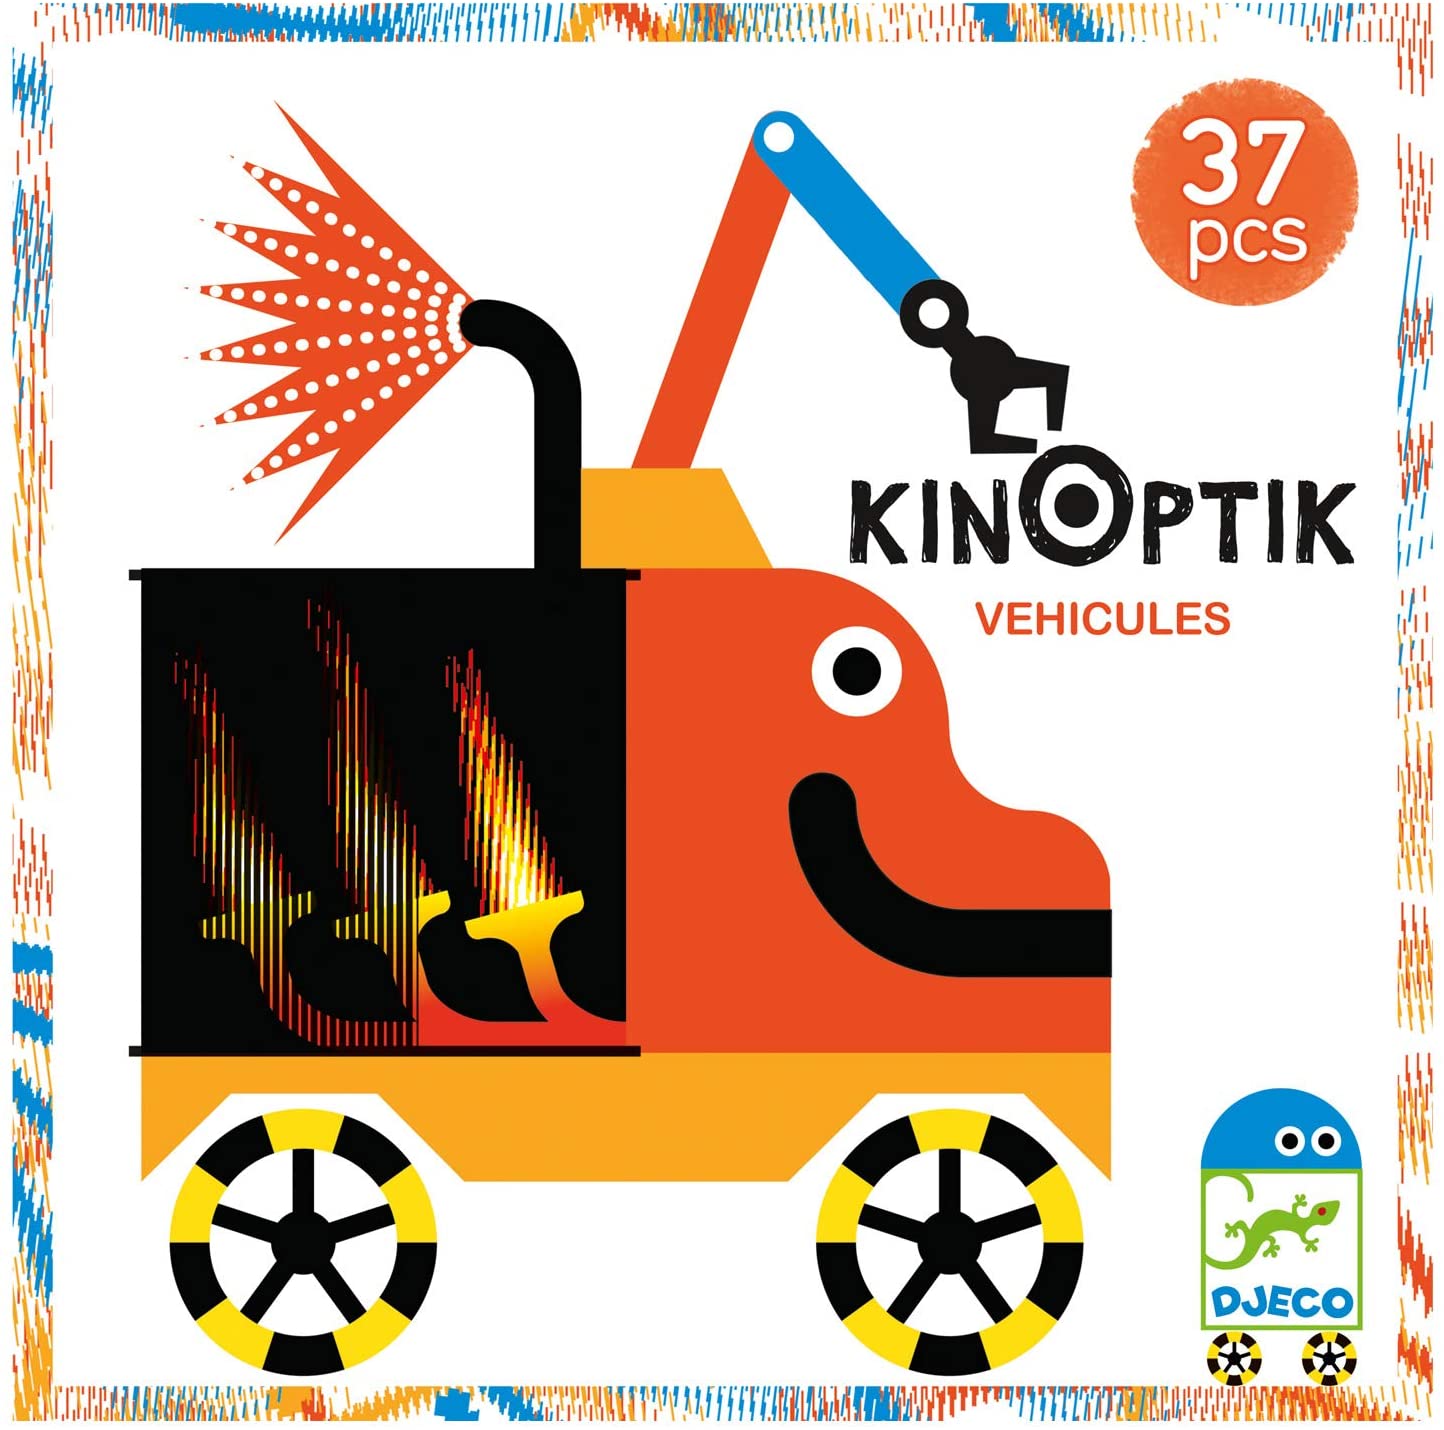 Kinoptik kjøretøy- lag et puslespill hvor figurene beveger seg